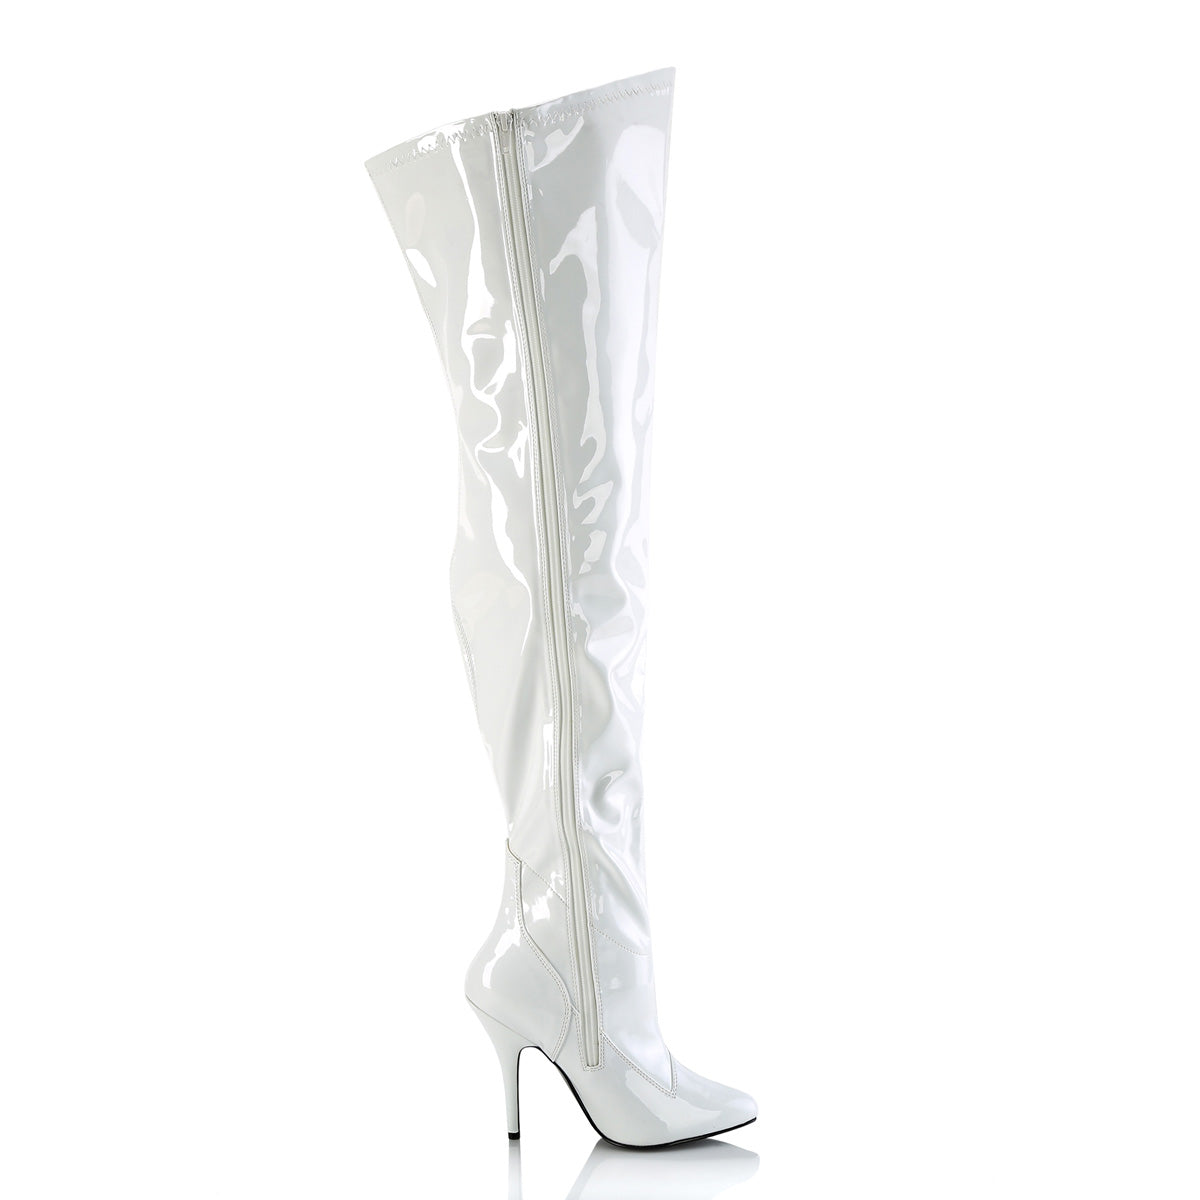 wide calf white thigh high boots seduce-3000wc